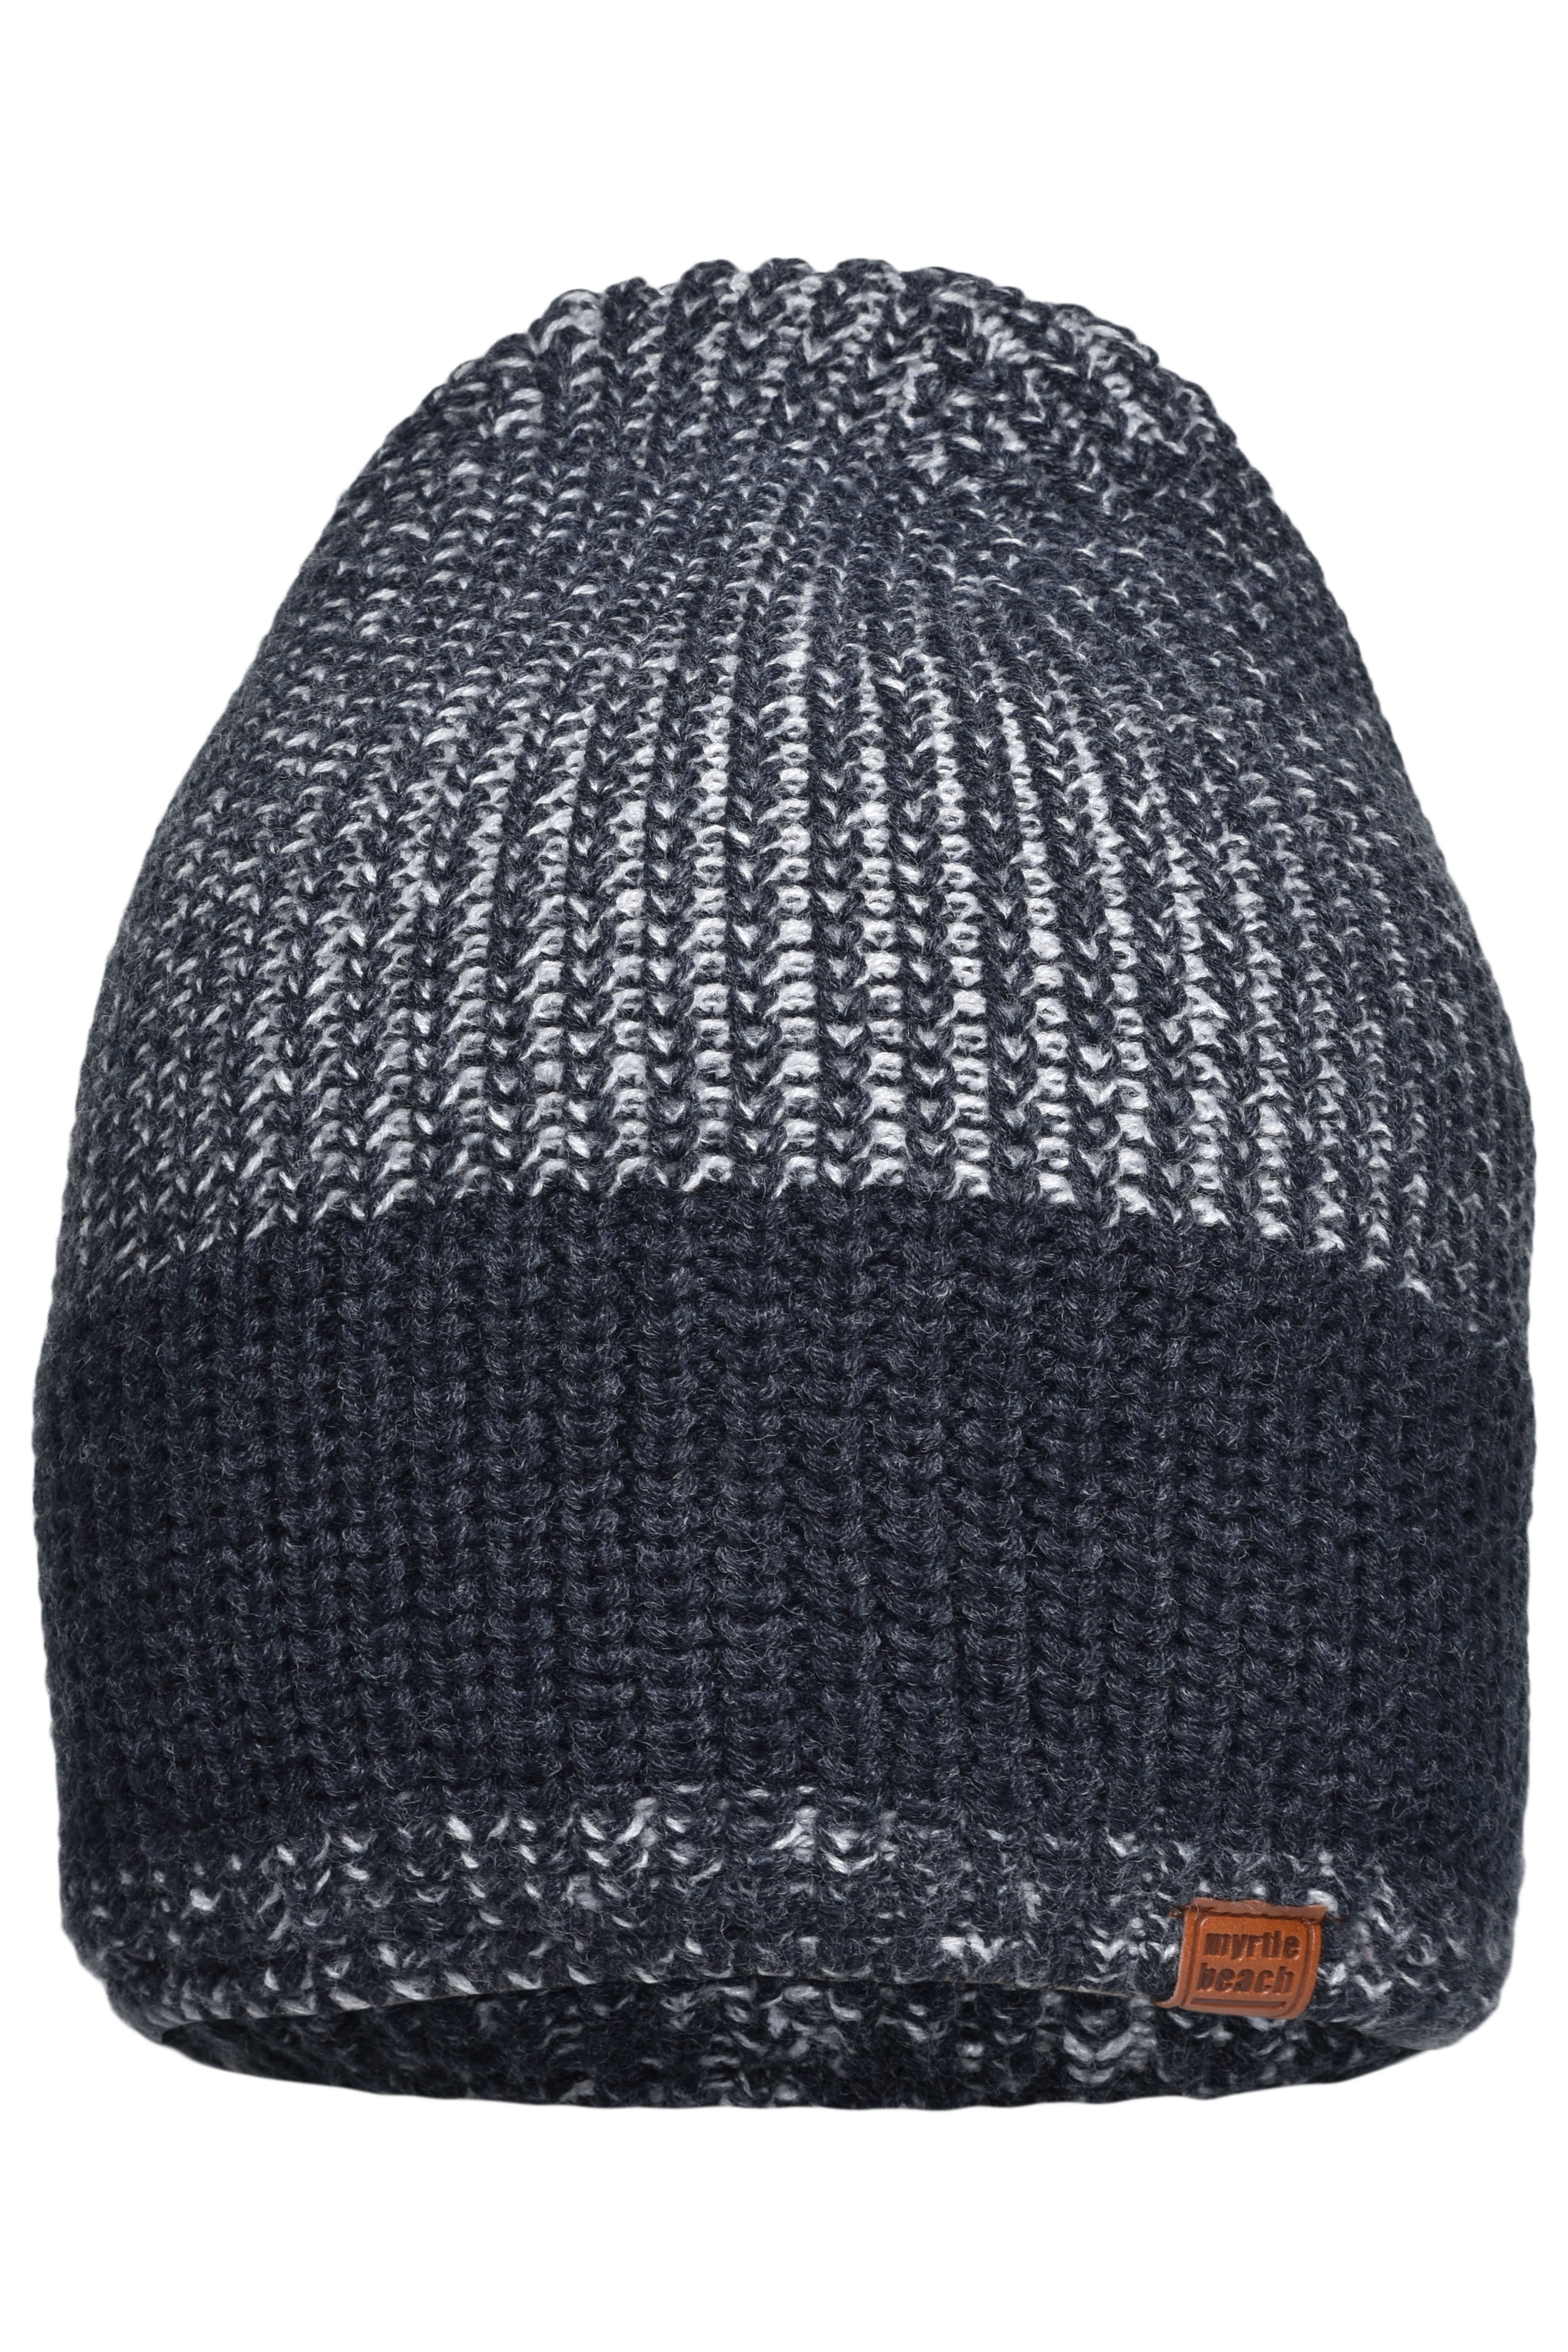 Urban Knitted Hat MB7993 Melierte Strickmütze in modischem Ripp-Design